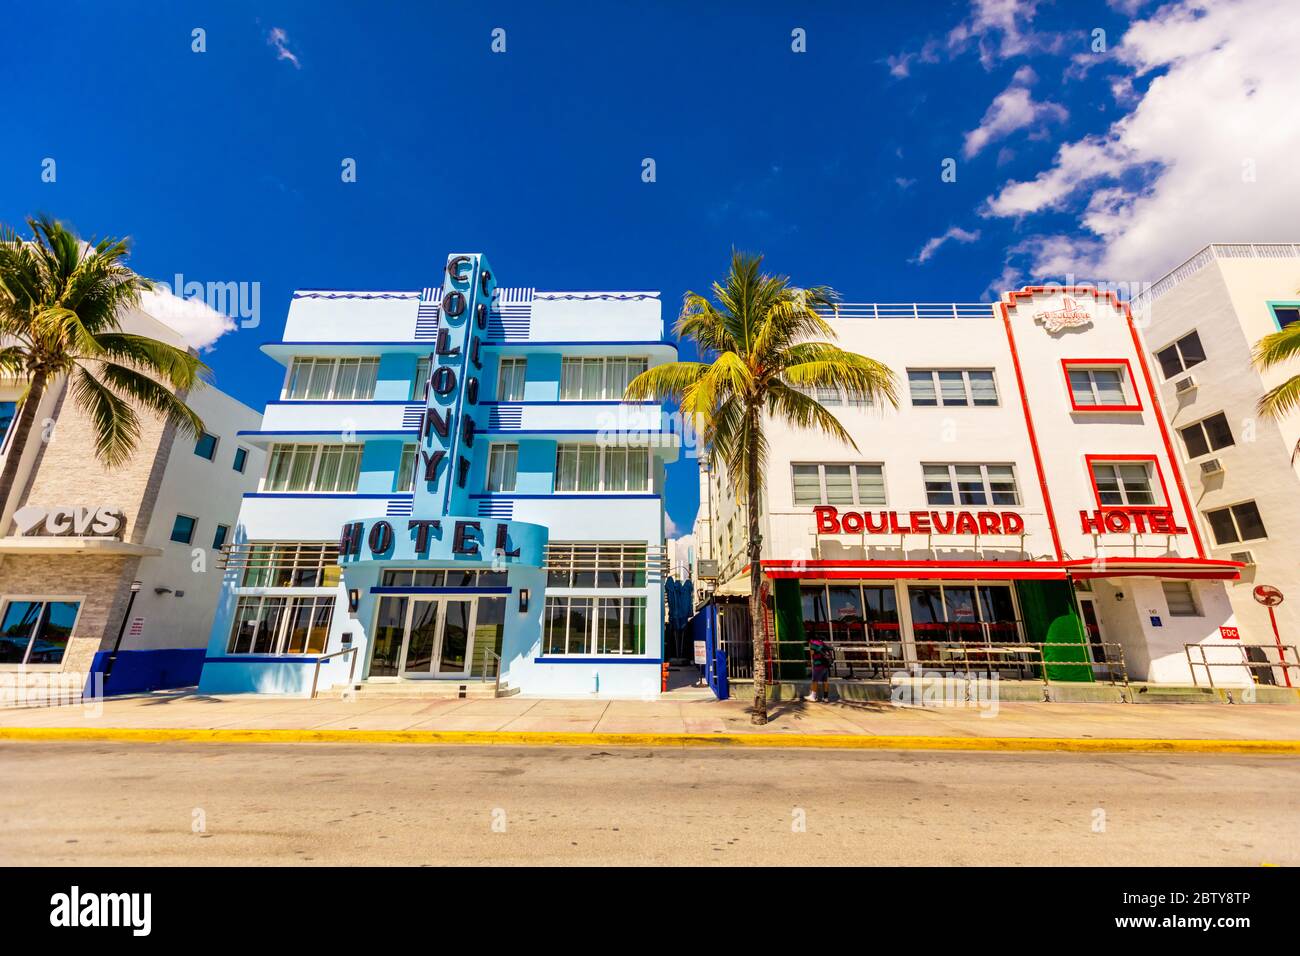 Der meist gepackte Deco Drive in South Beach Miami liegt während der COVID-19 Viruspandemie, Miami, Florida, Vereinigte Staaten von Amerika, North Amer, leer Stockfoto